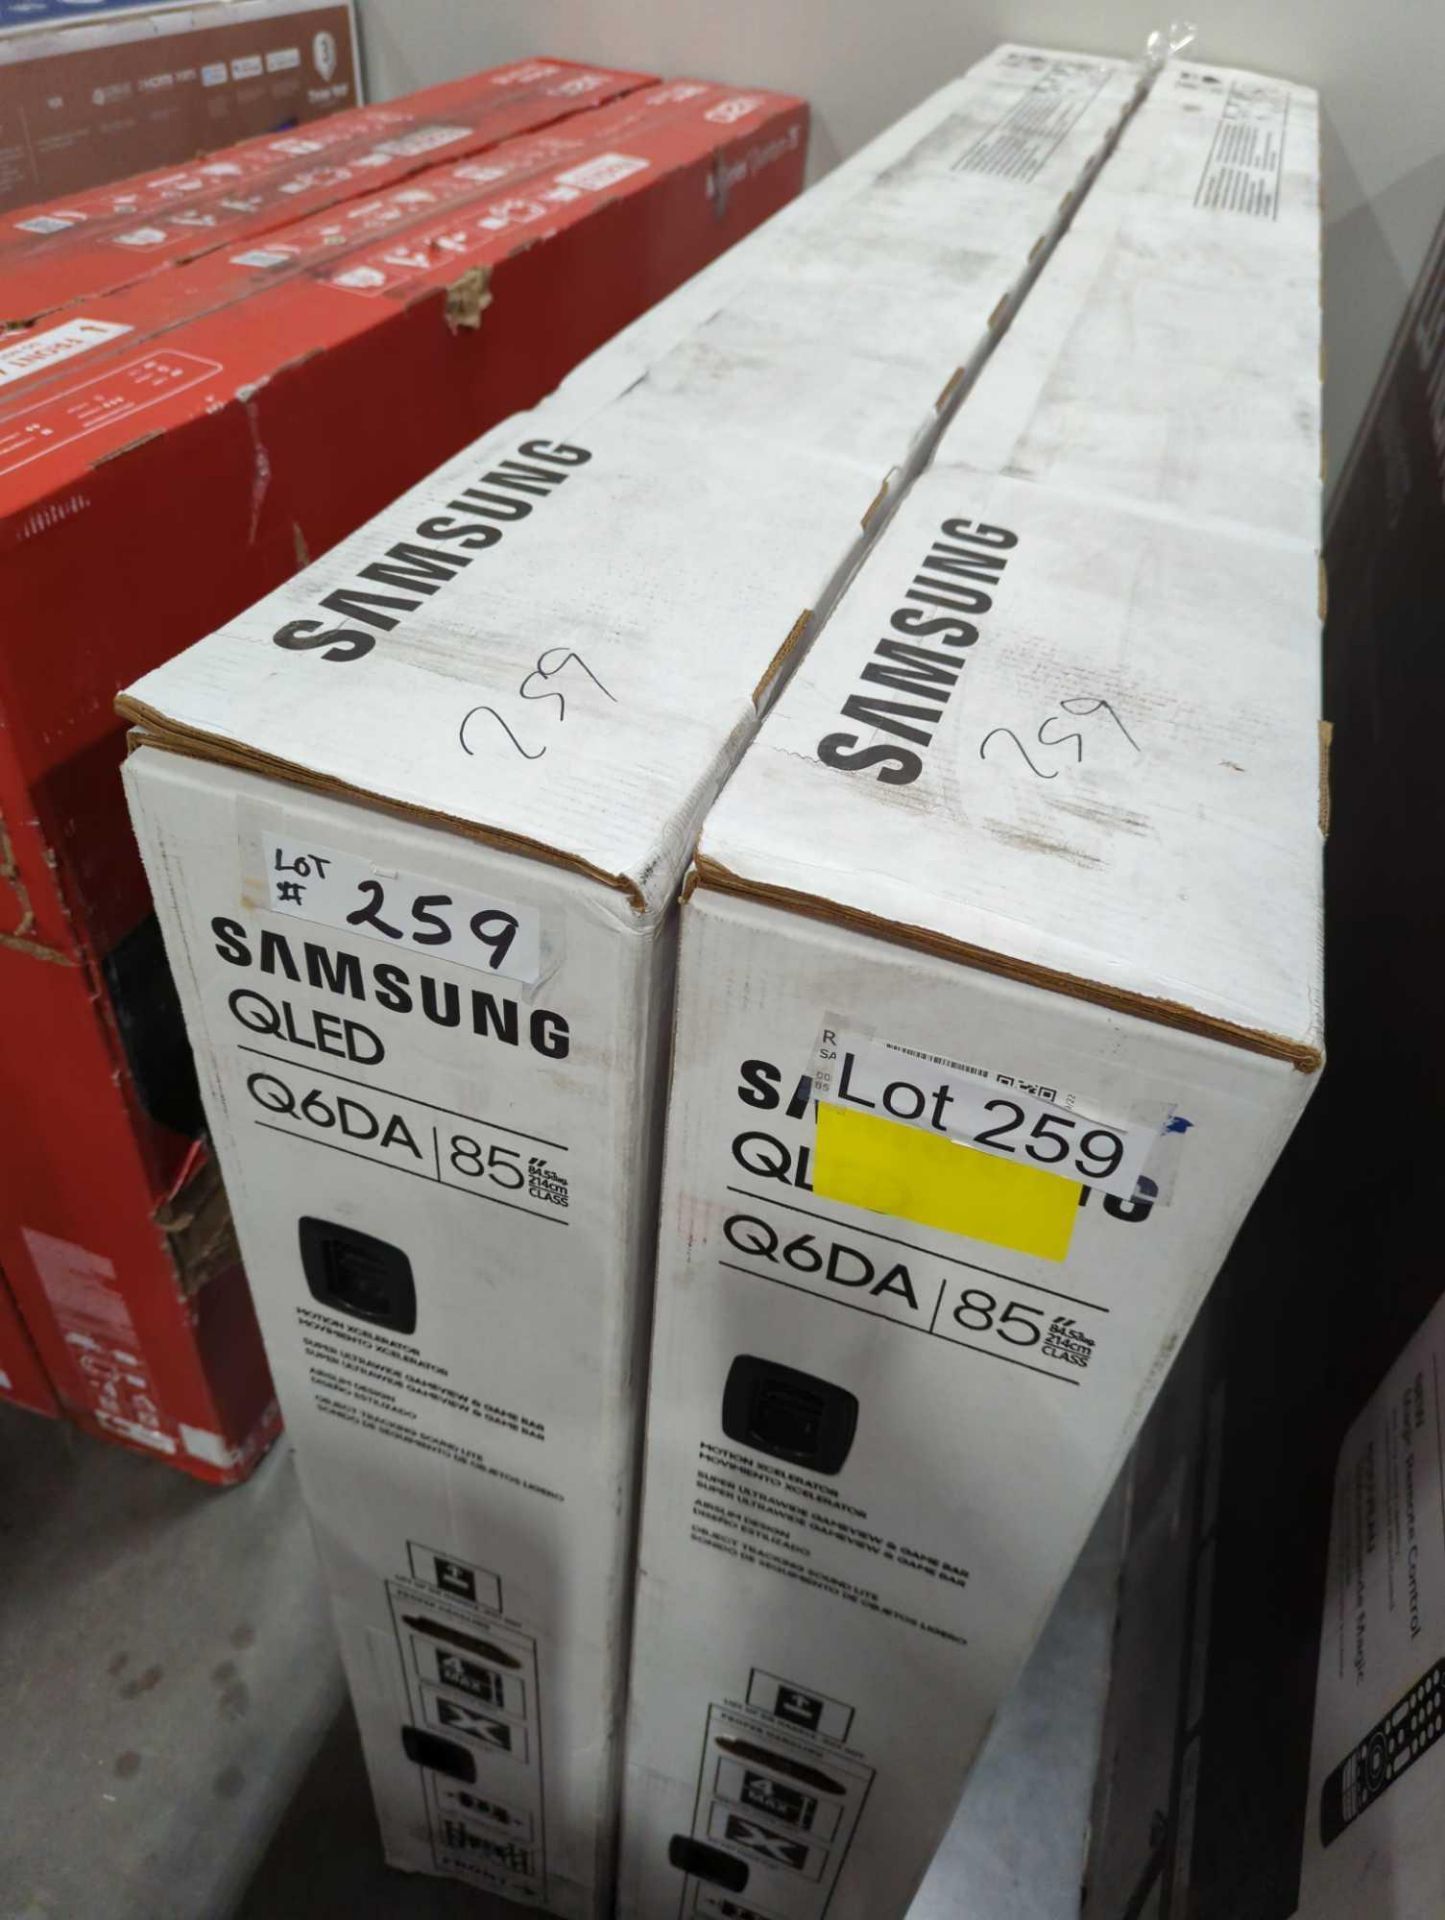 two Samsung q6da 85 in TVs